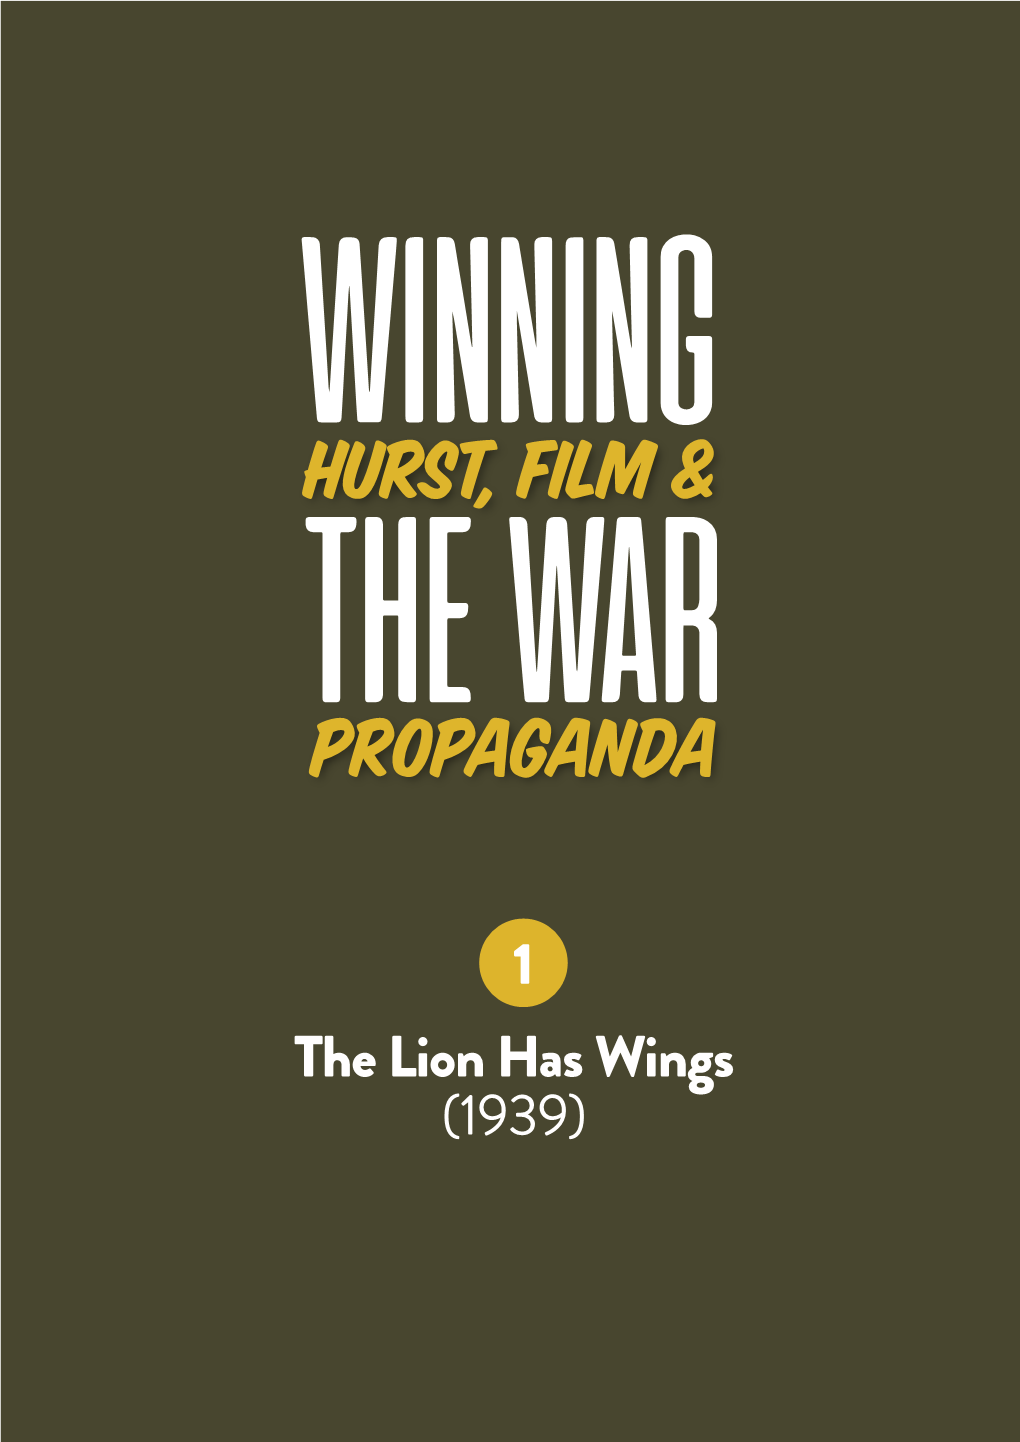 Hurst, Film & Propaganda